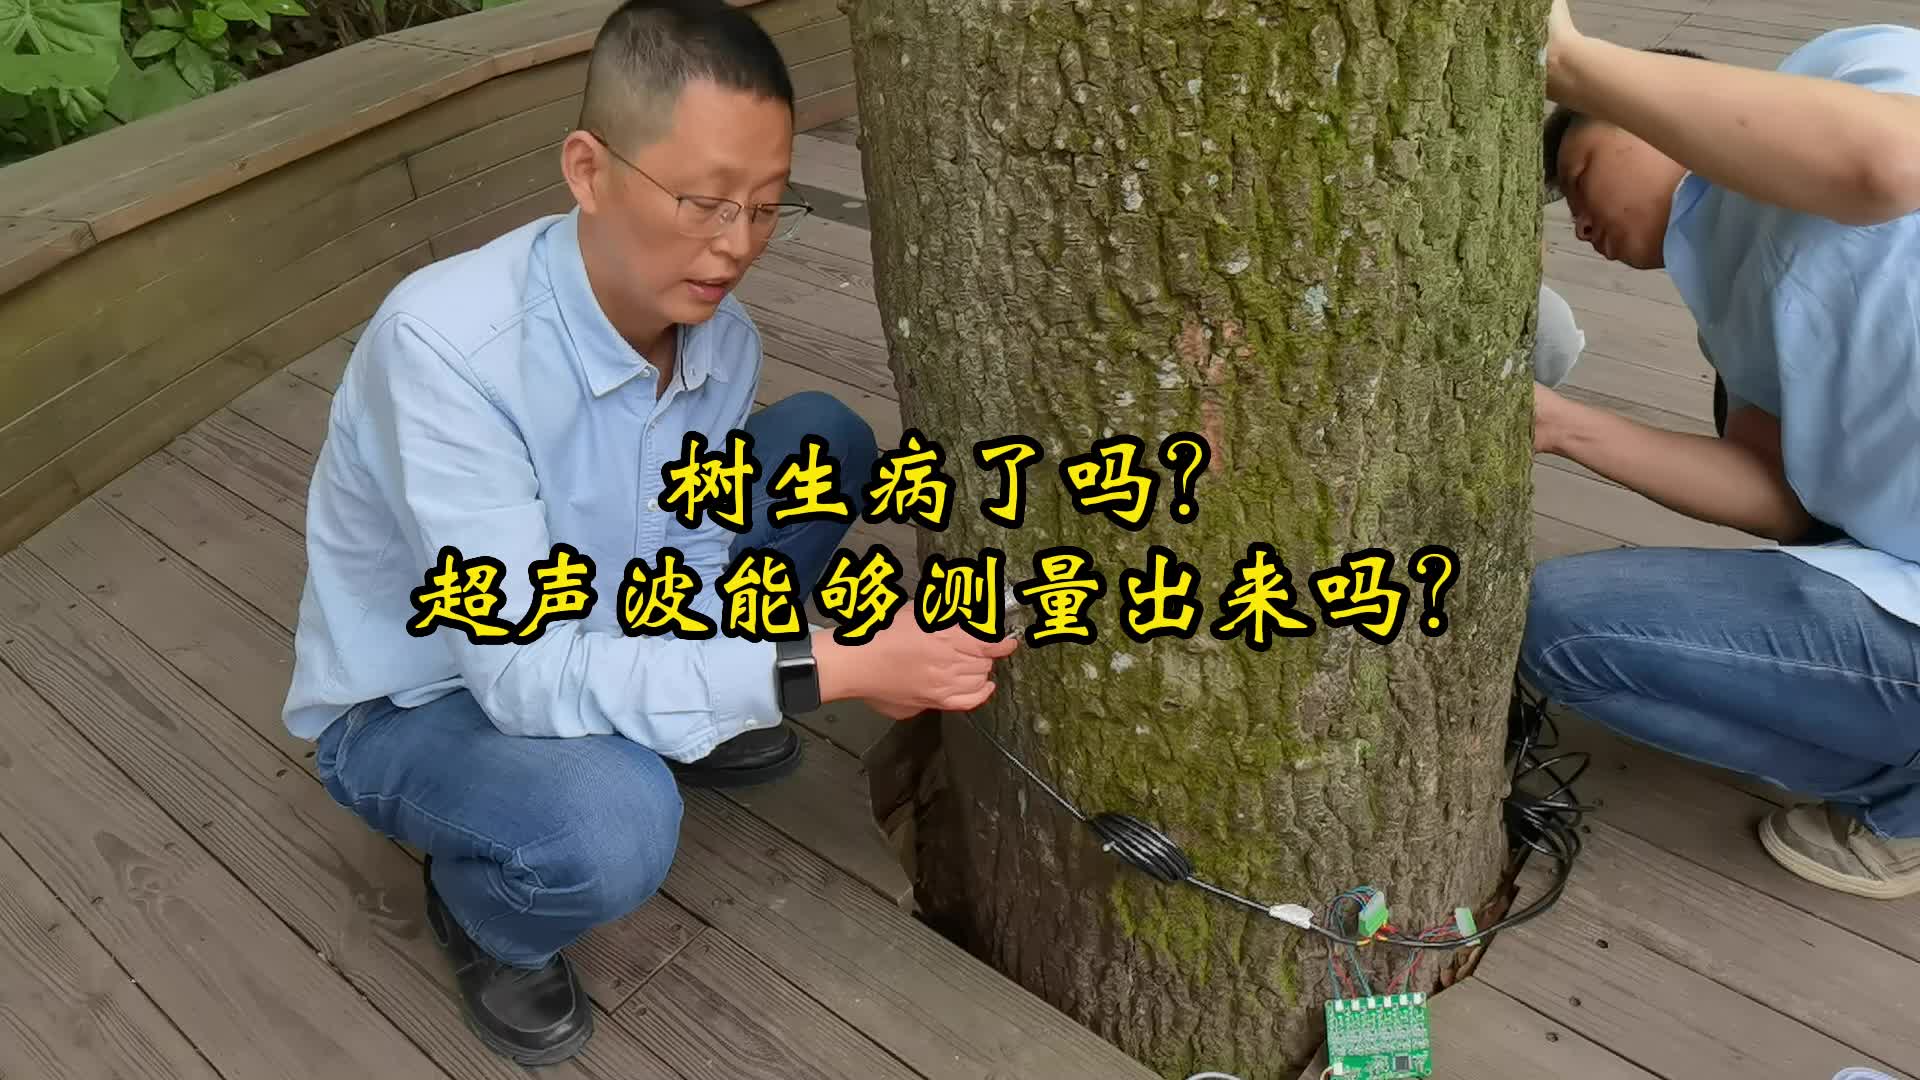 树生病了吗？超声波传感器能够测量出来吗？#探头#超声波传感器 